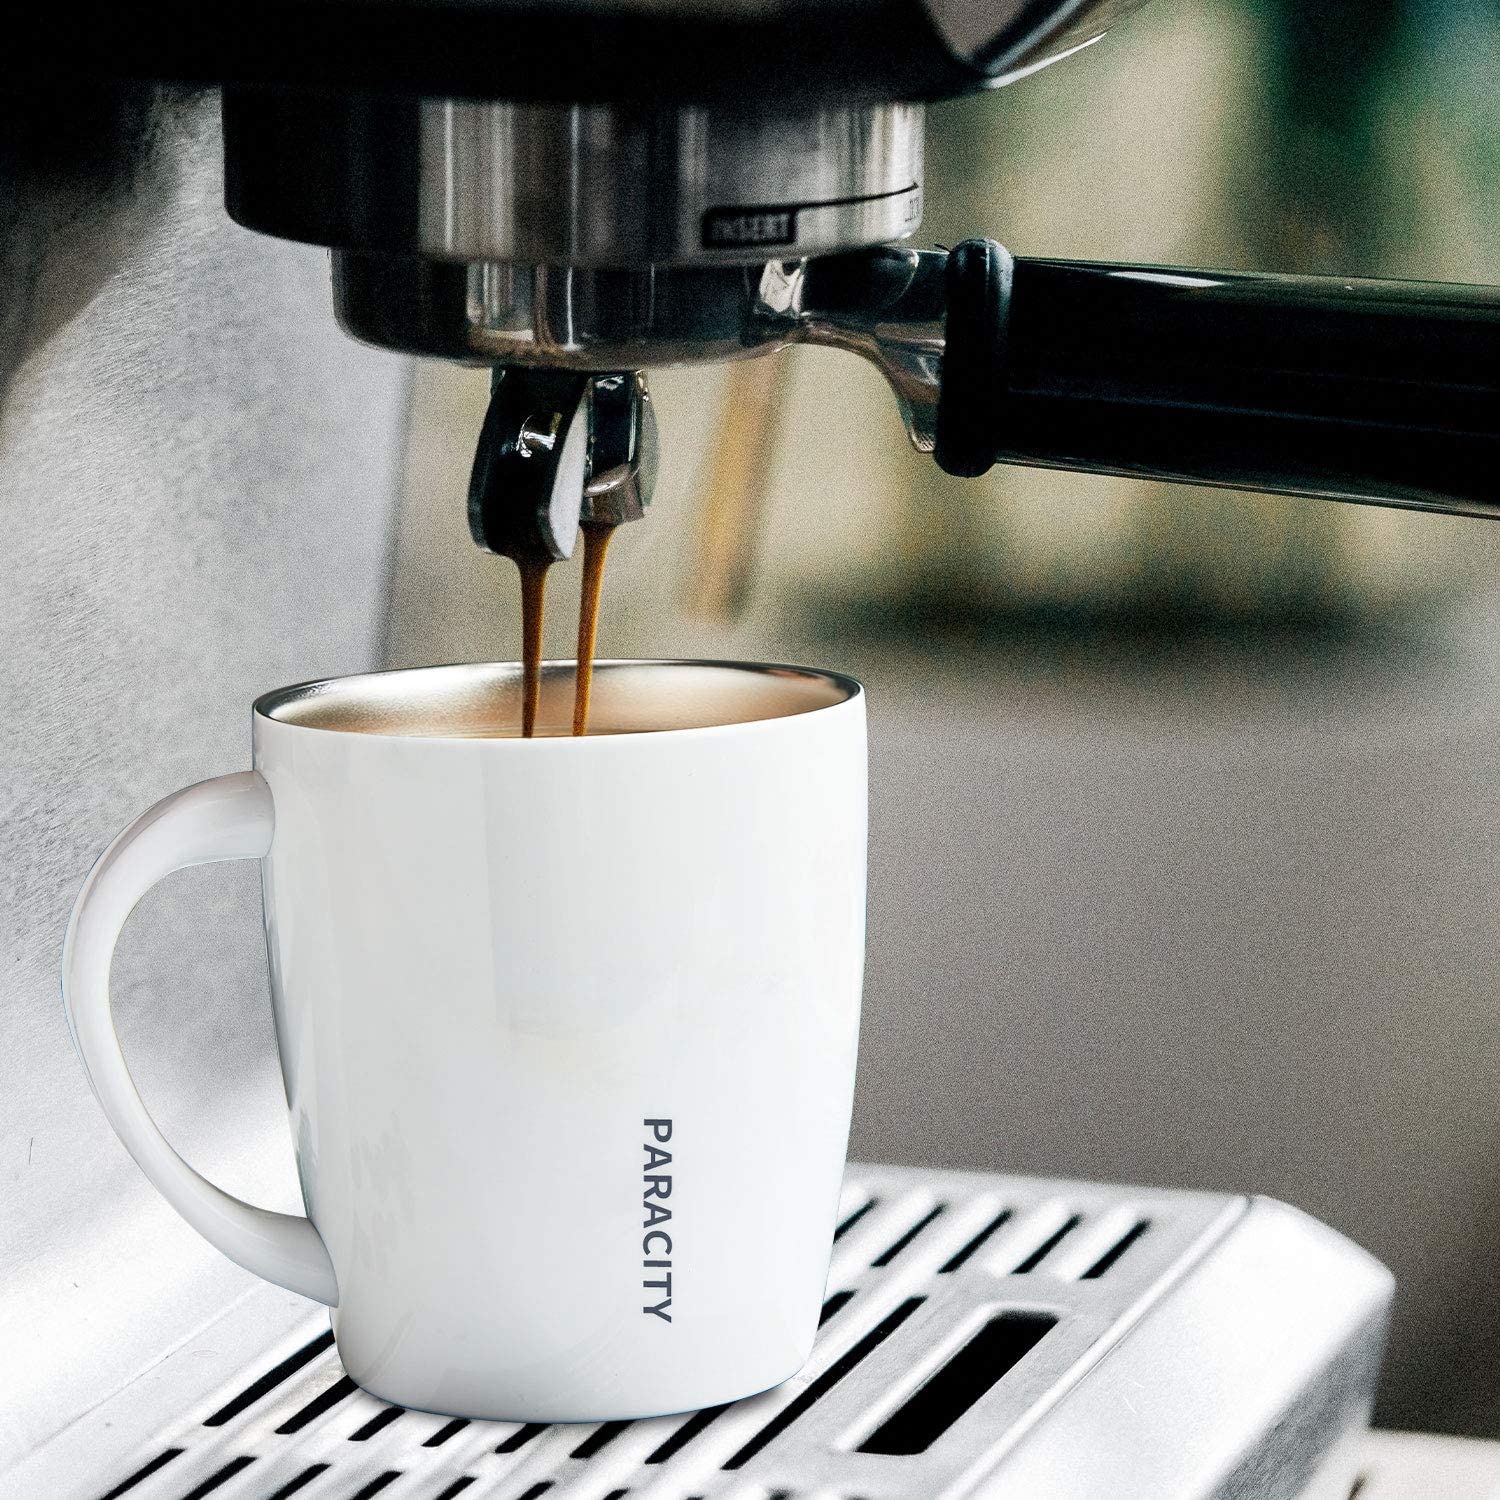 PARACITY Stainless Steel Coffee Mug